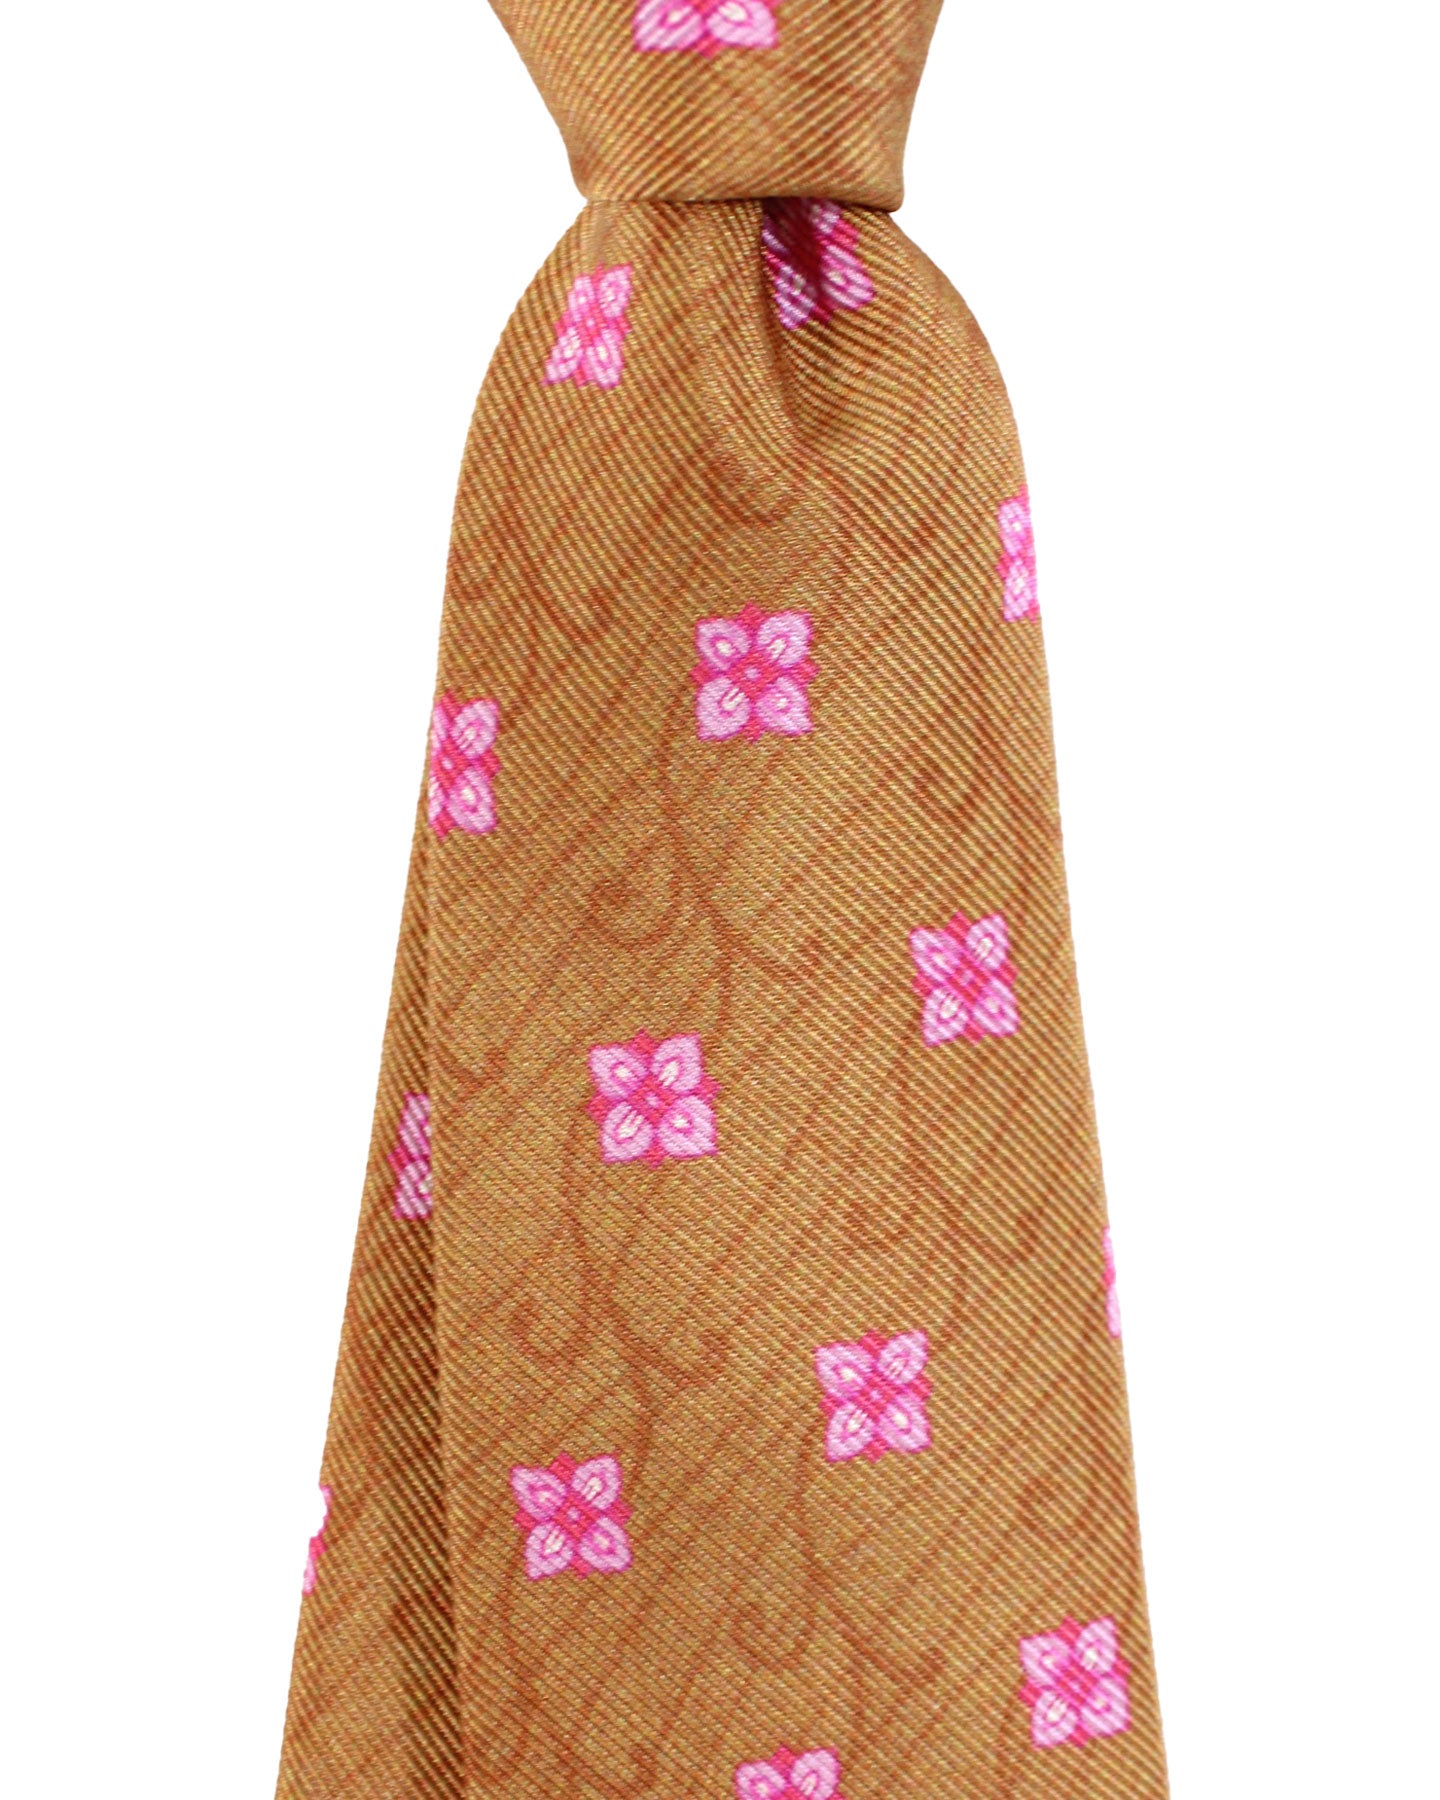 Kiton Tie Brown Pink Floral - Sevenfold Necktie